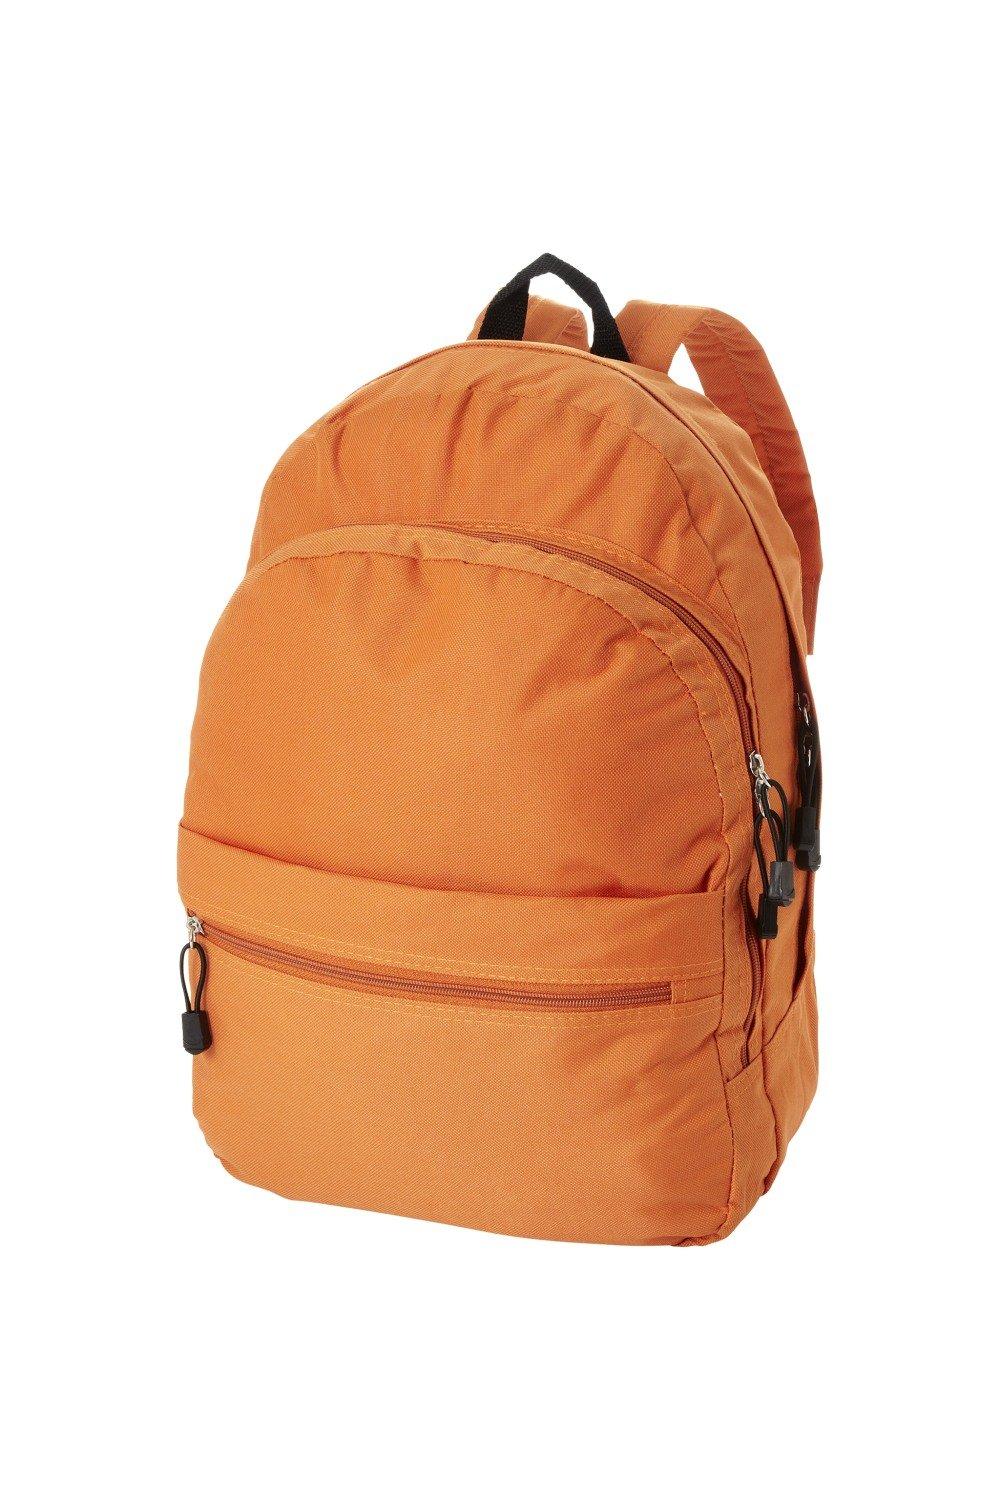 Трендовый рюкзак Bullet, оранжевый